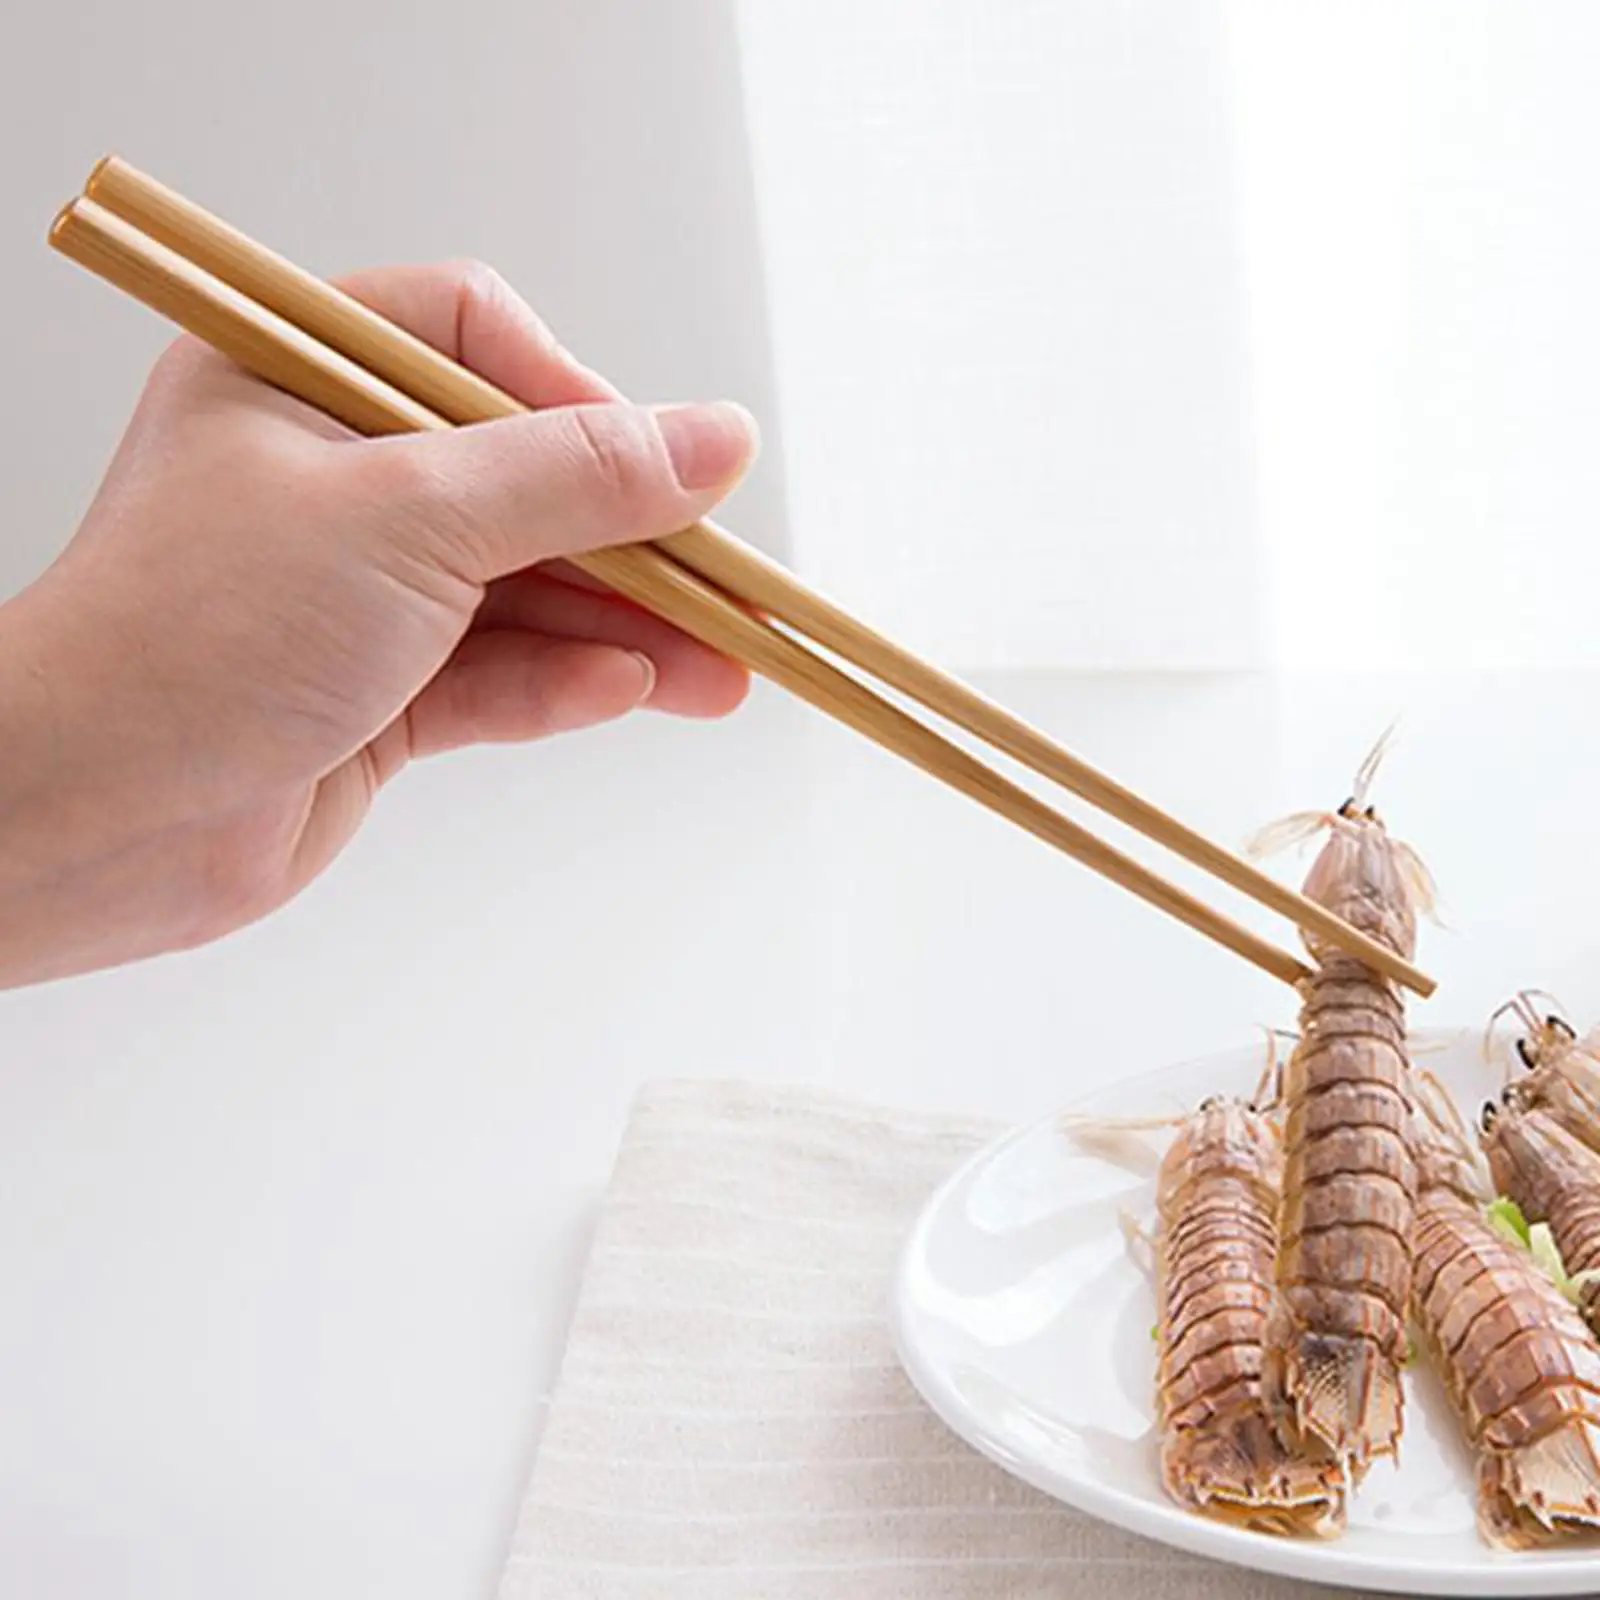 10 Pieces Wood Chopsticks Rustic Nonslip Reusable Dinnerware Utensils Kids Chopstick Set for Ramen Hotel Restaurant Hot Pot